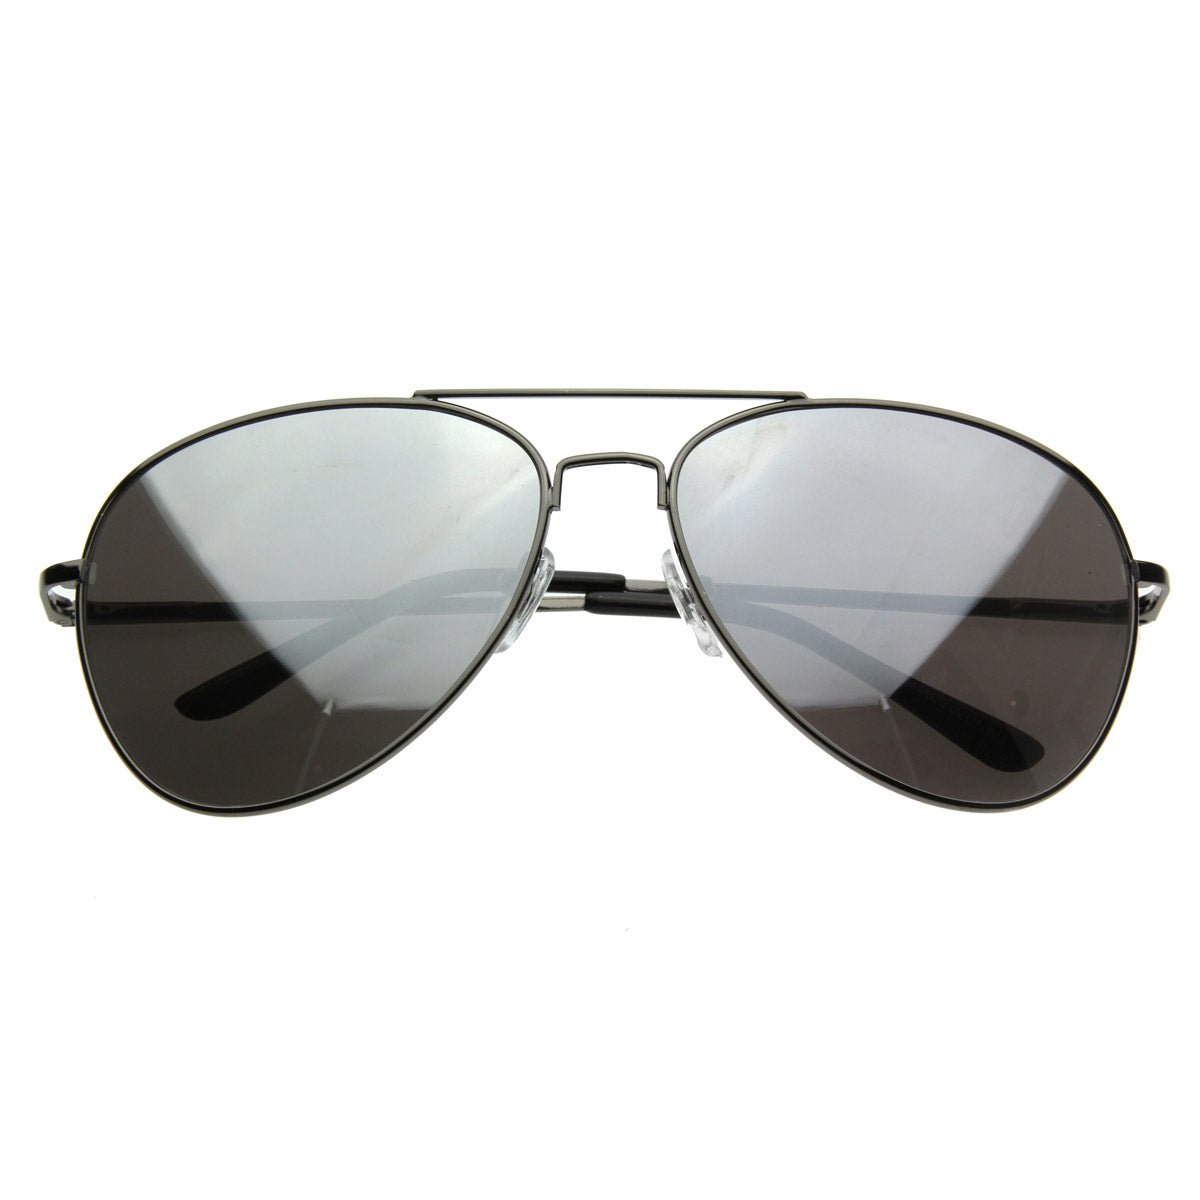 MIRROR Sunglasses FULL Mirrored Aviator Metal